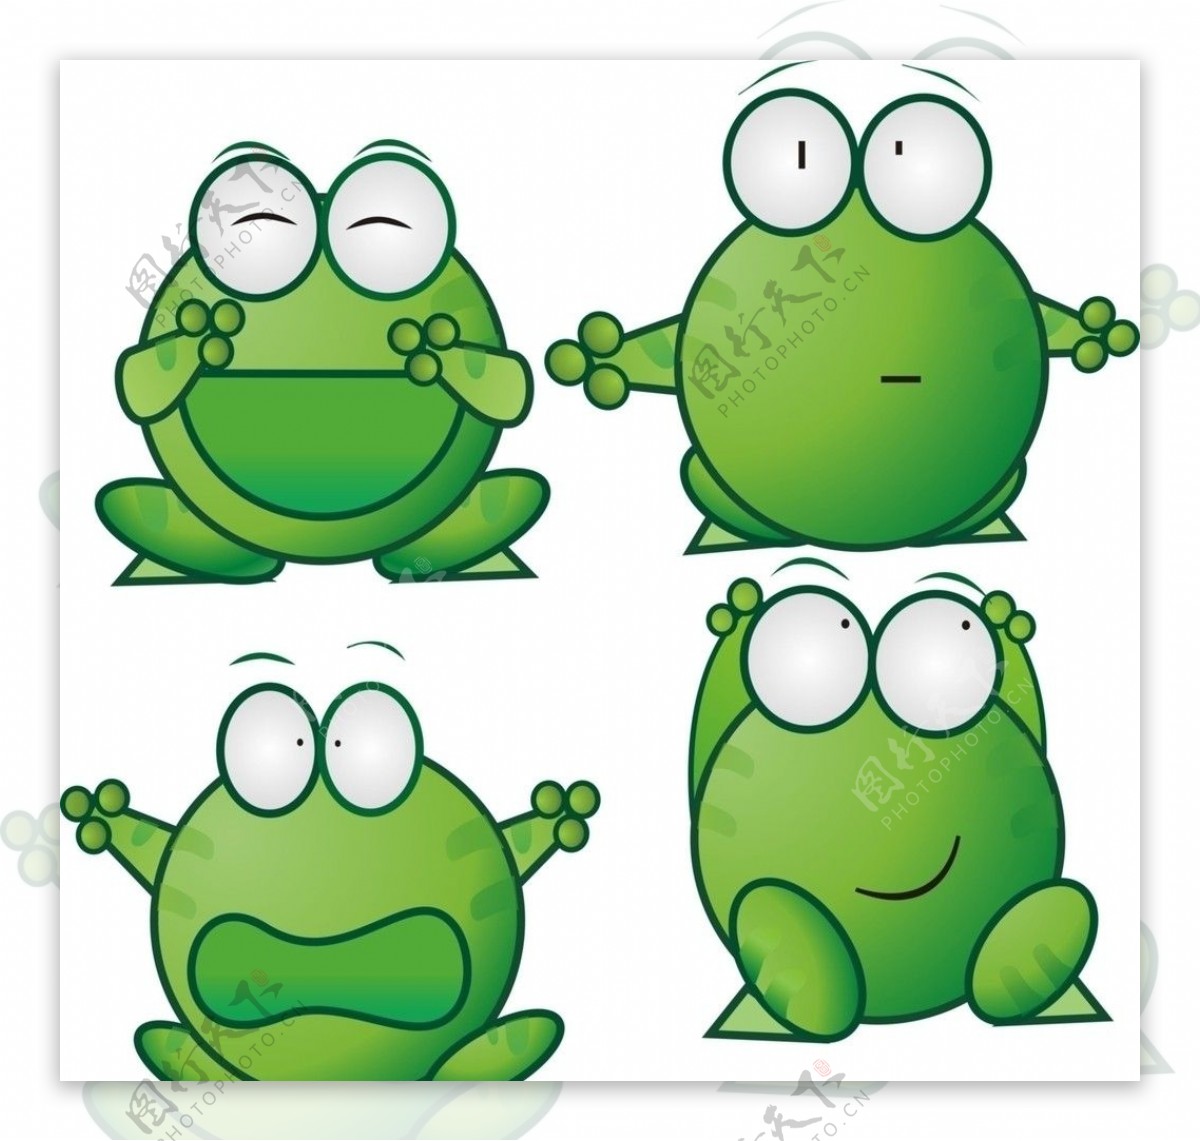 绿豆蛙第18集-国创-高清正版在线观看-bilibili-哔哩哔哩